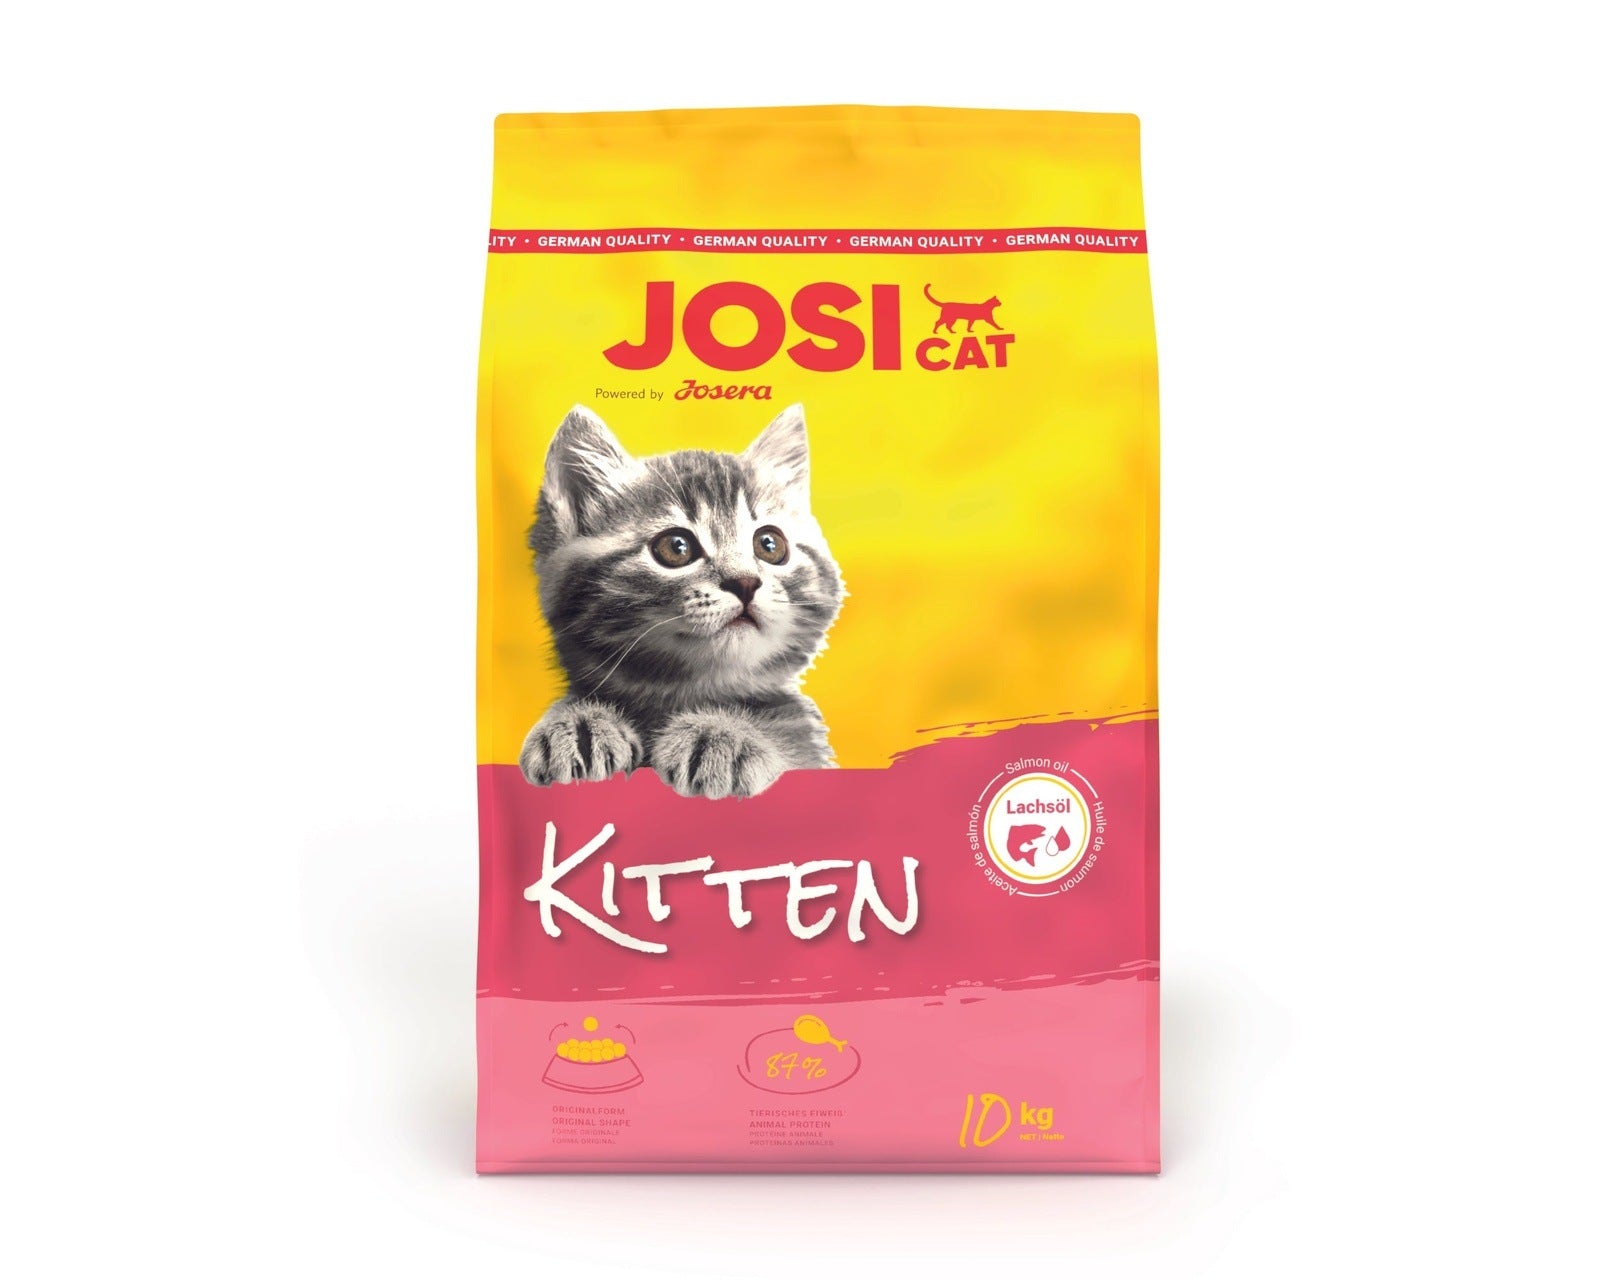 Artikel mit dem Namen JosiCat Kitten im Shop von zoo.de , dem Onlineshop für nachhaltiges Hundefutter und Katzenfutter.